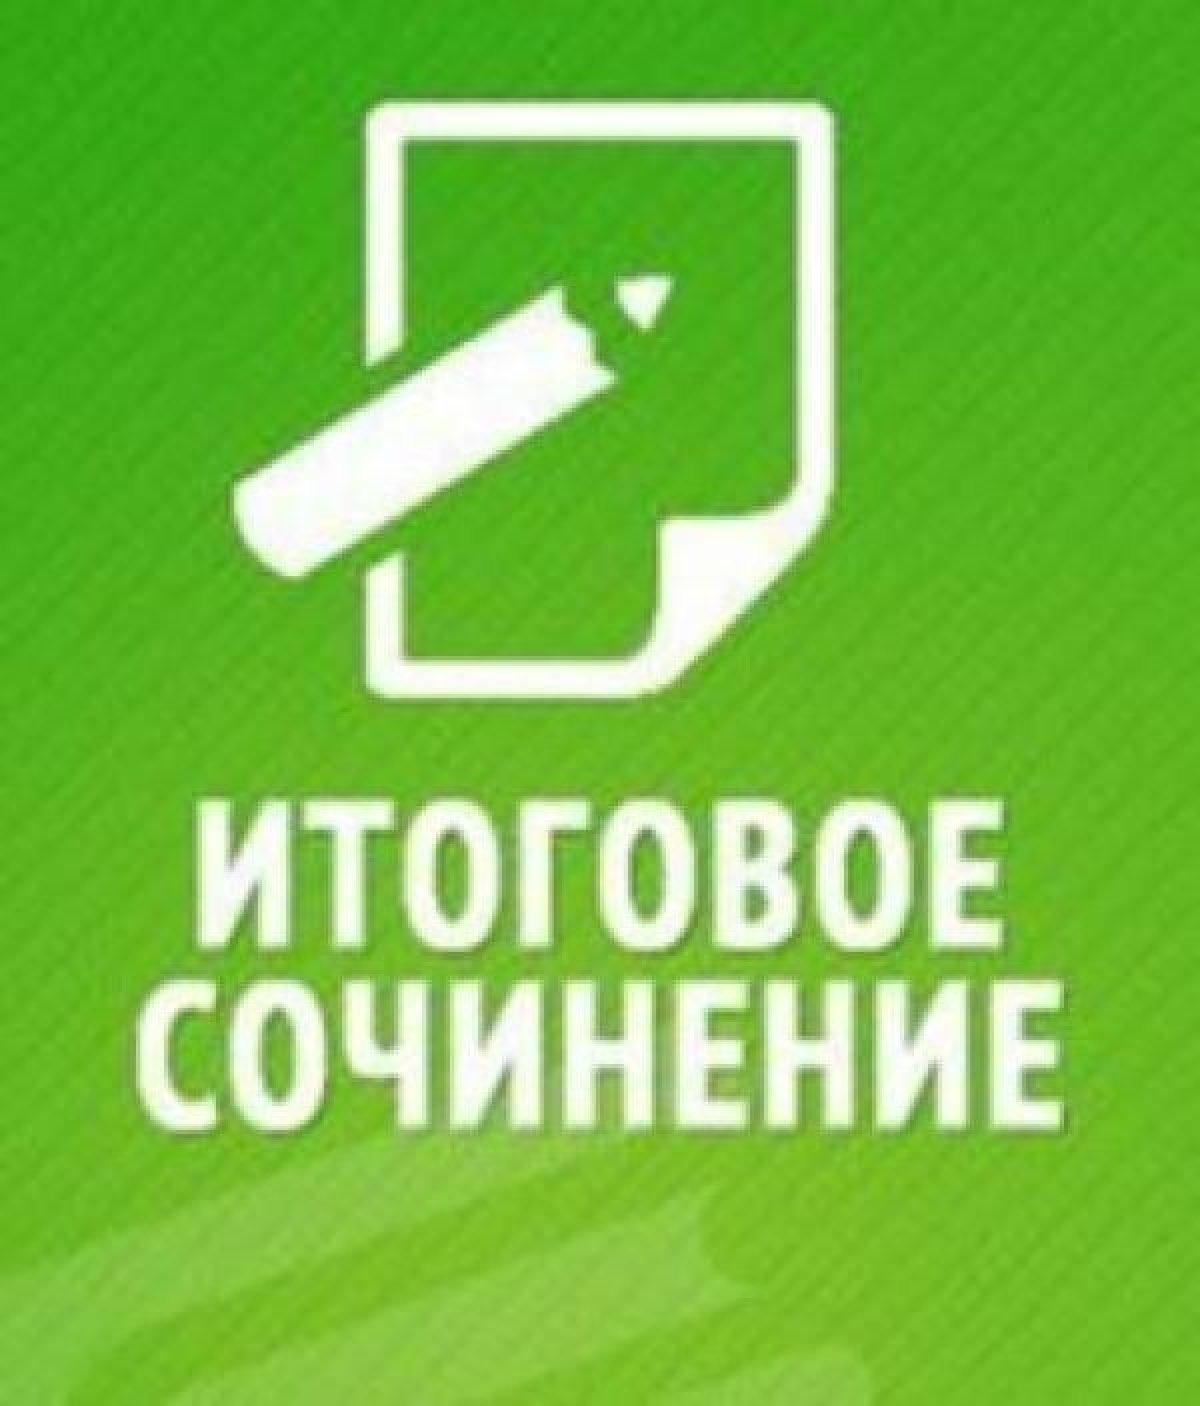 Институт дополнительного образования РГГУ